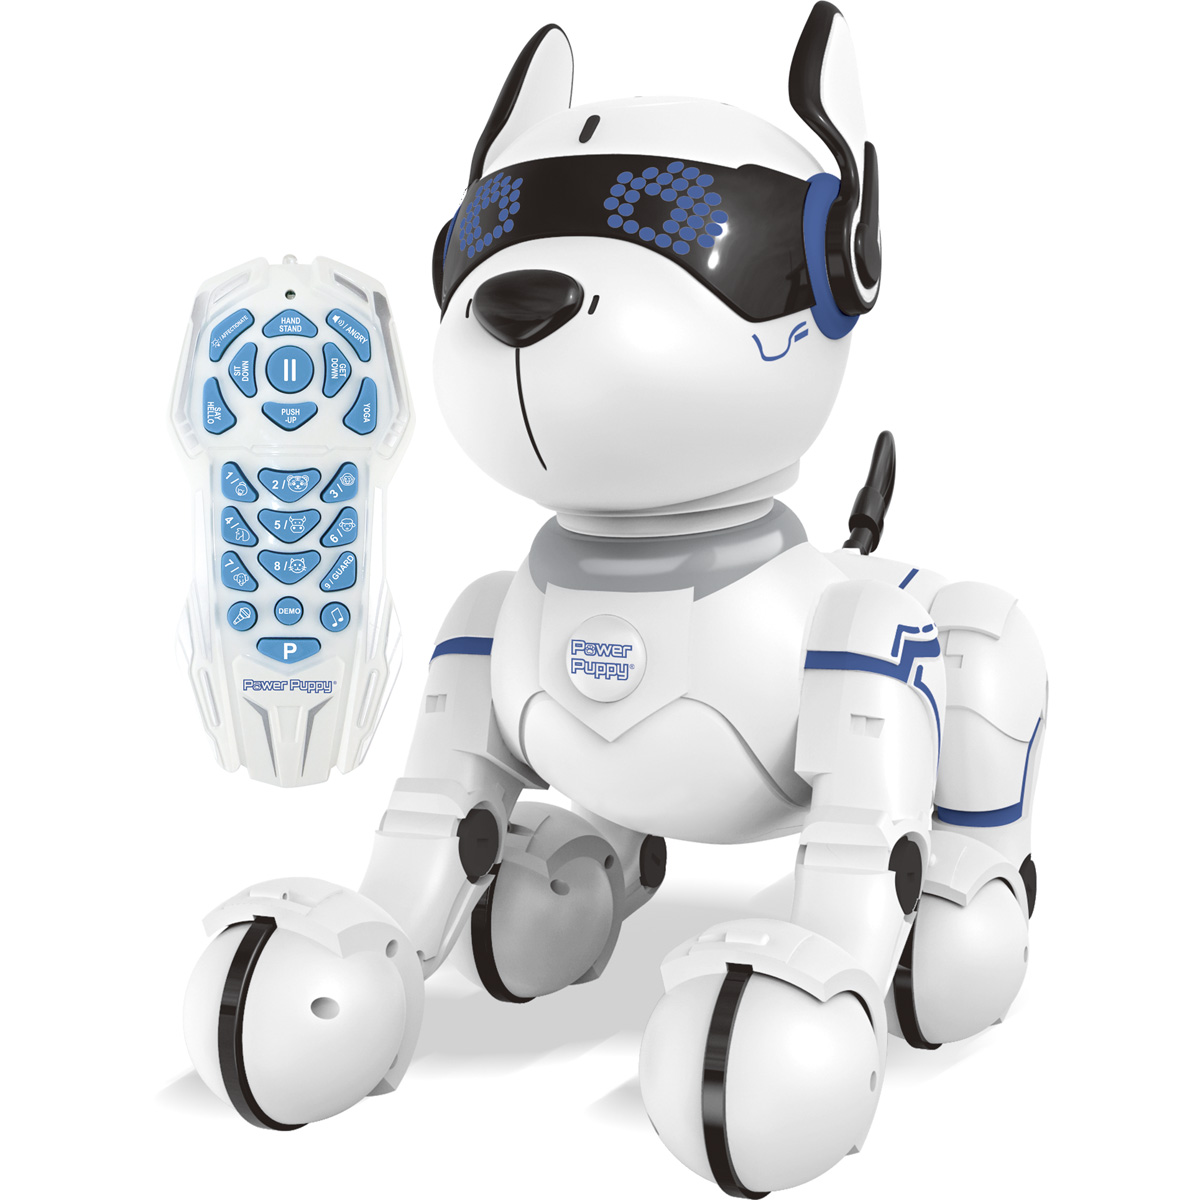 LEXIBOOK POWER Lernroboter, PUPPY Schwarz/Weiß Roboterhund Programmierbarer